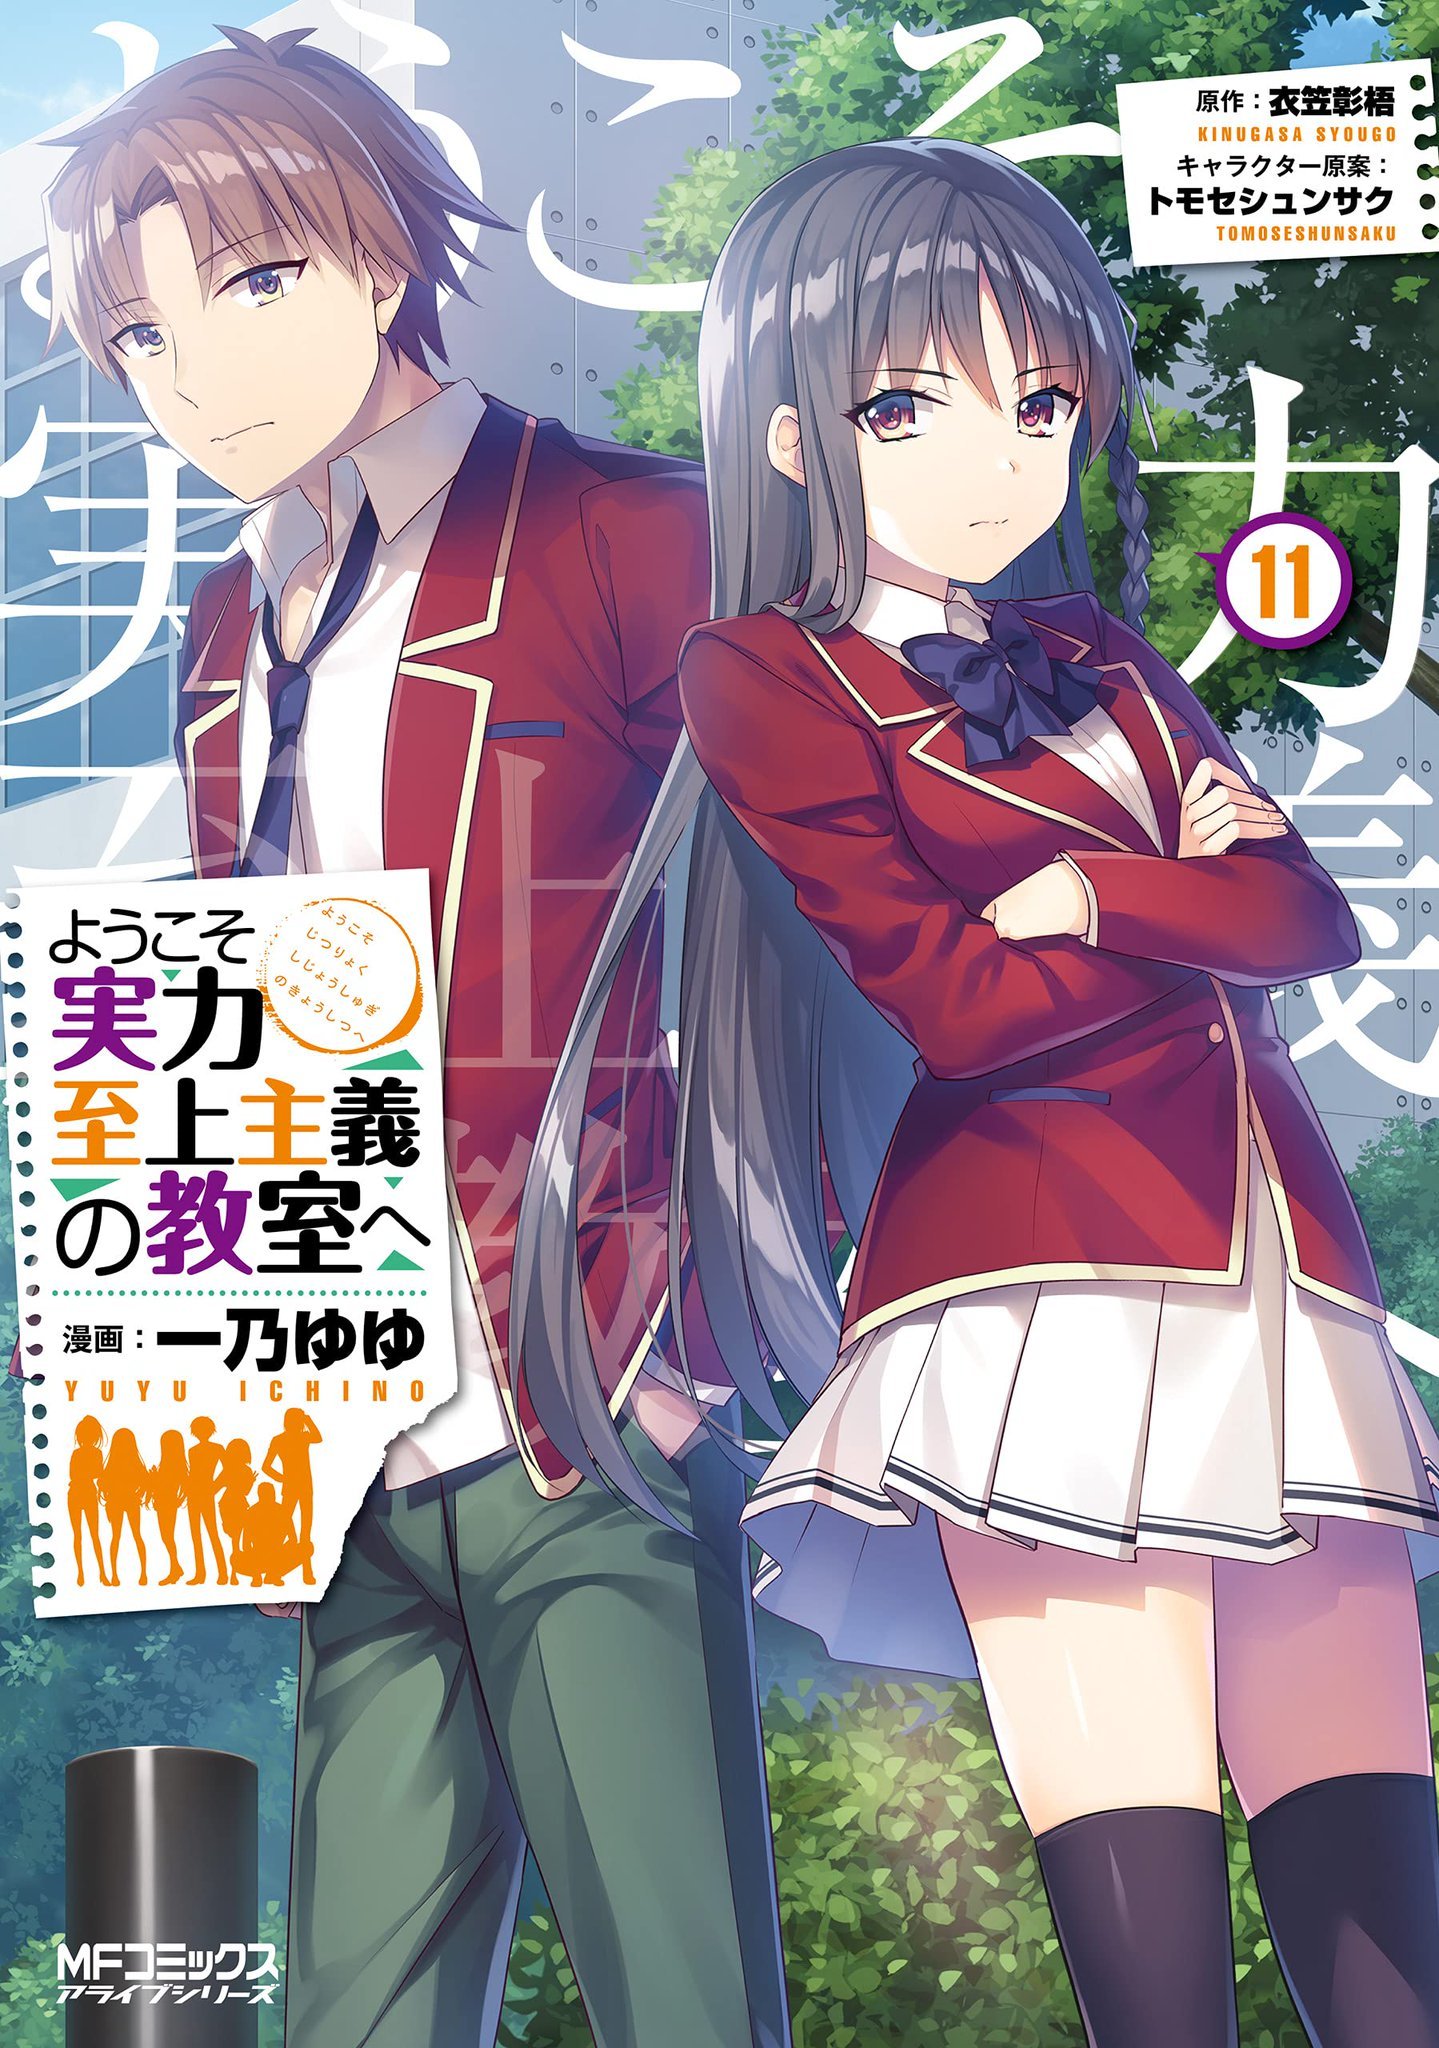 Light Novel][English] Youkoso Jitsuryoku Shijou Shugi no Kyoushitsu e